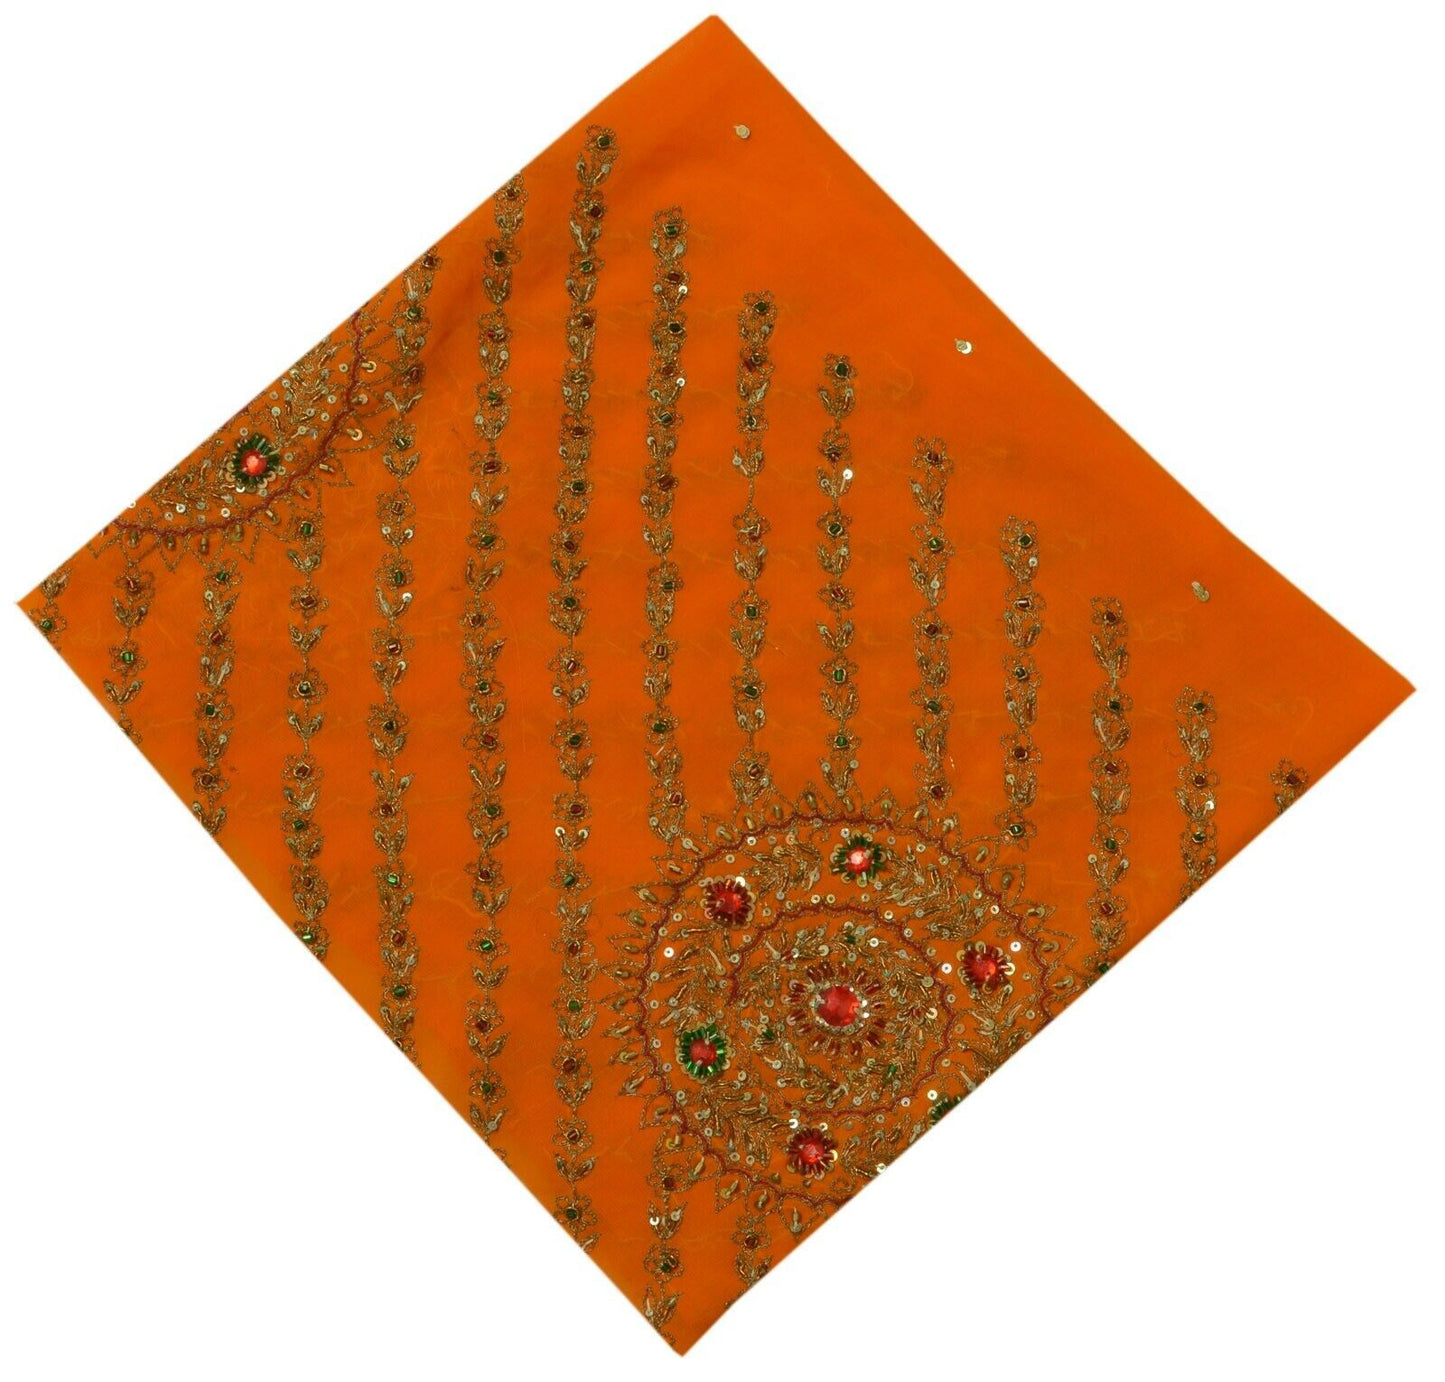 Vintage Saree Remnant Scrap Multi Purpose Craft Hand Beaded Orange Fabric